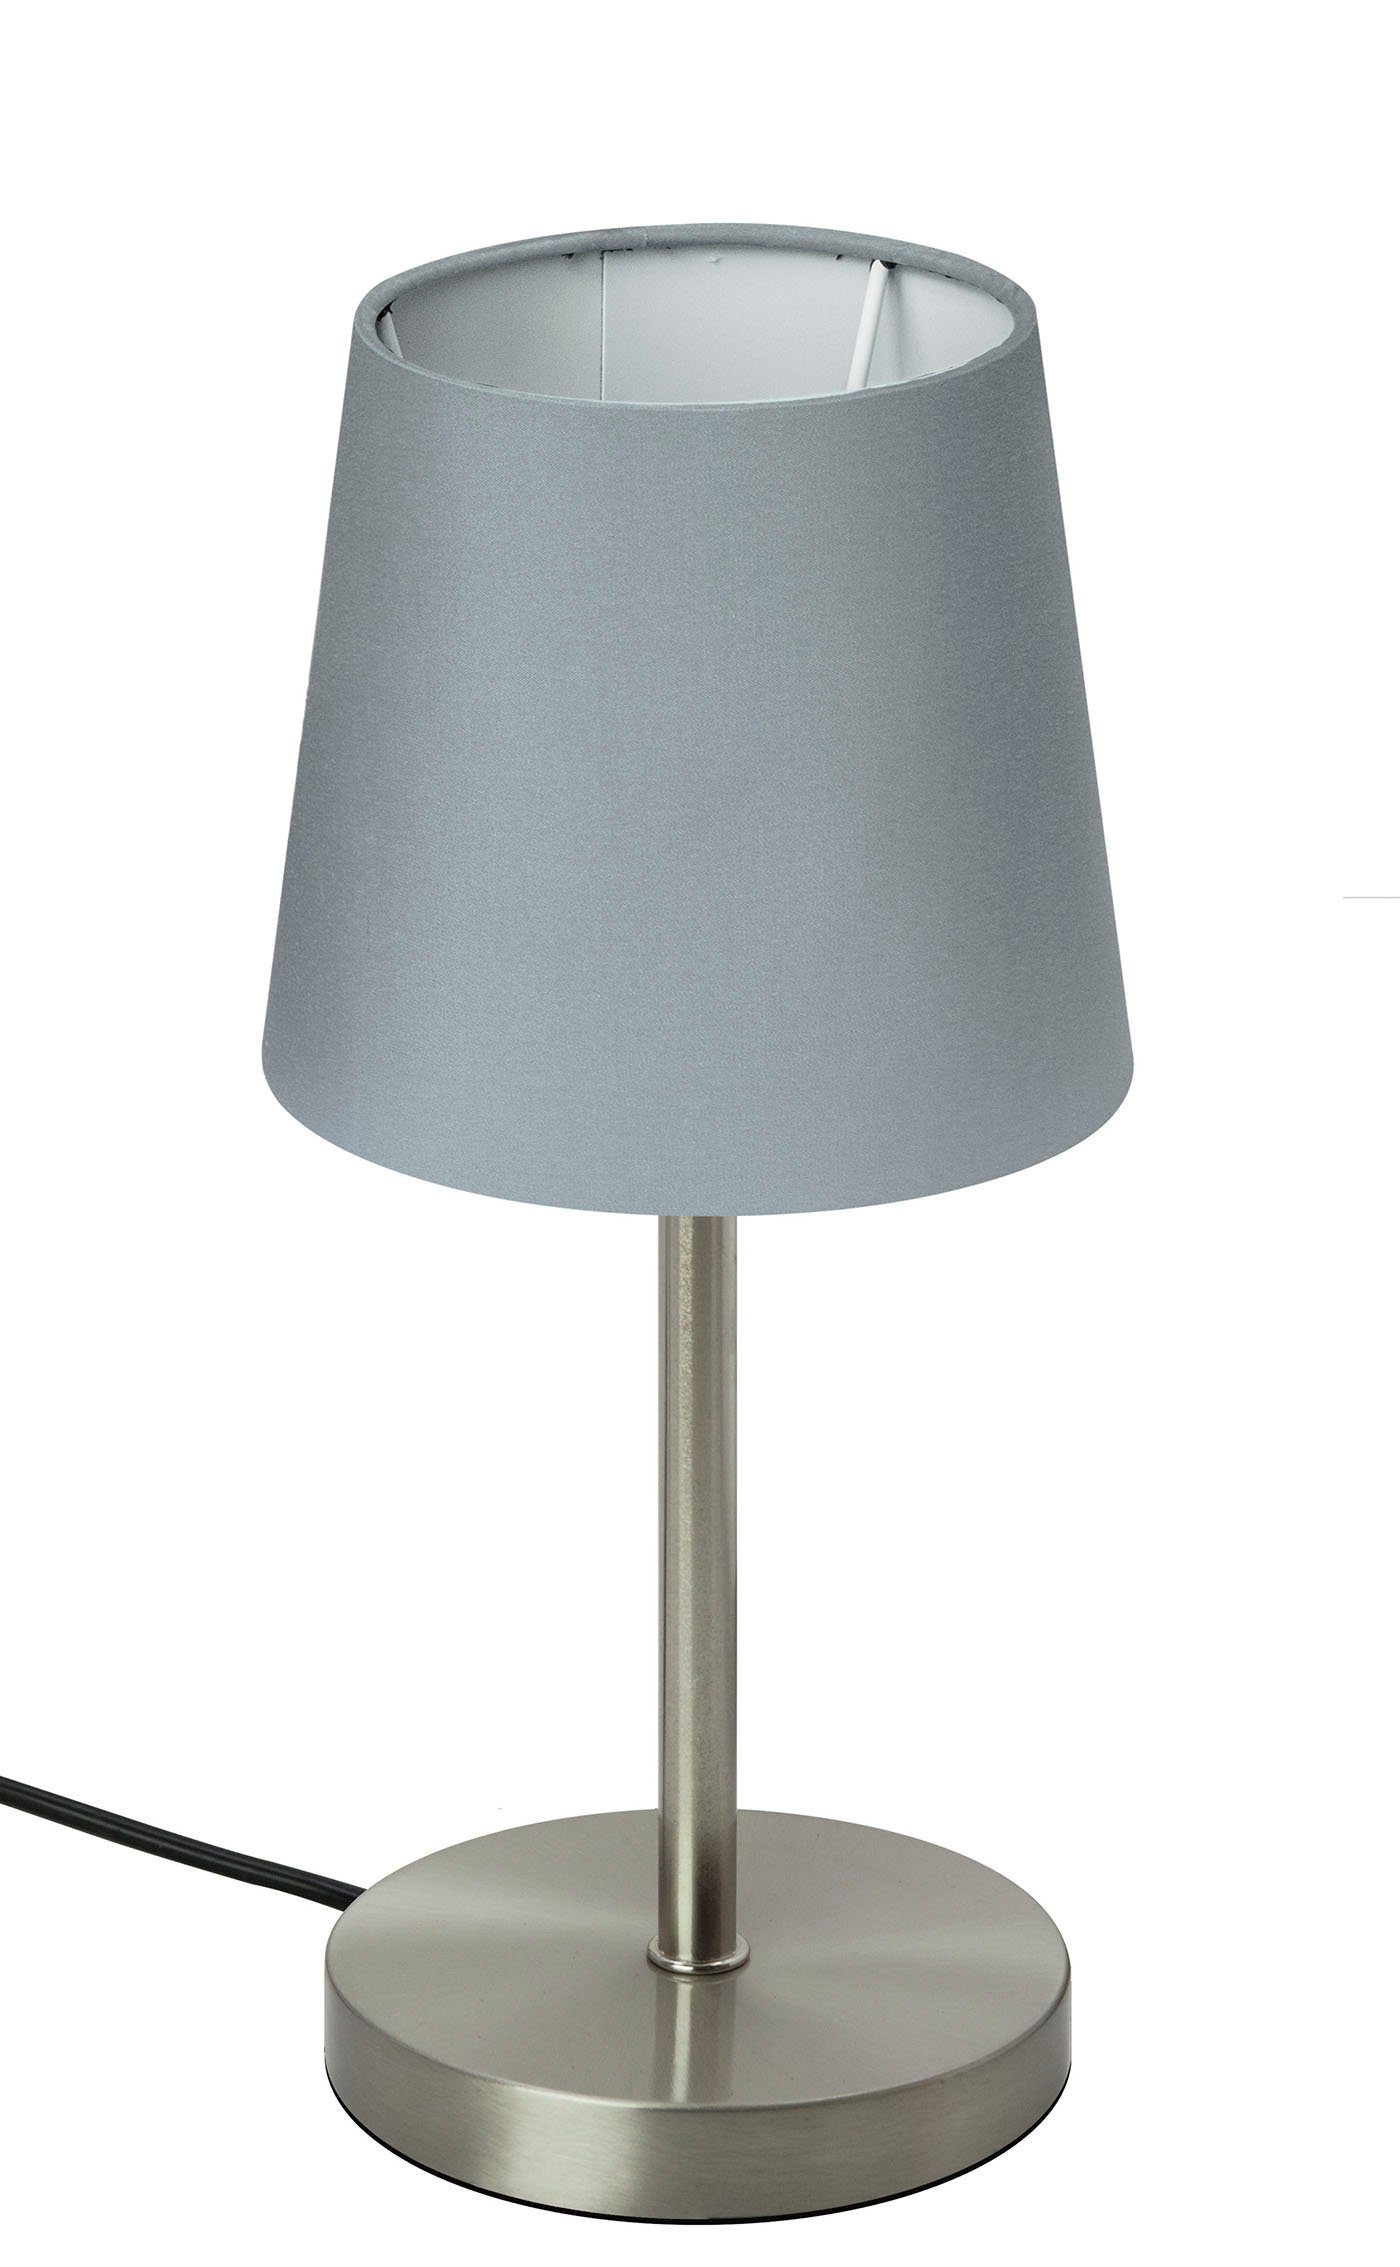 Deko Nacht Tisch Leuchte Touch Steuerung Design Lampe silber Glas satiniert 